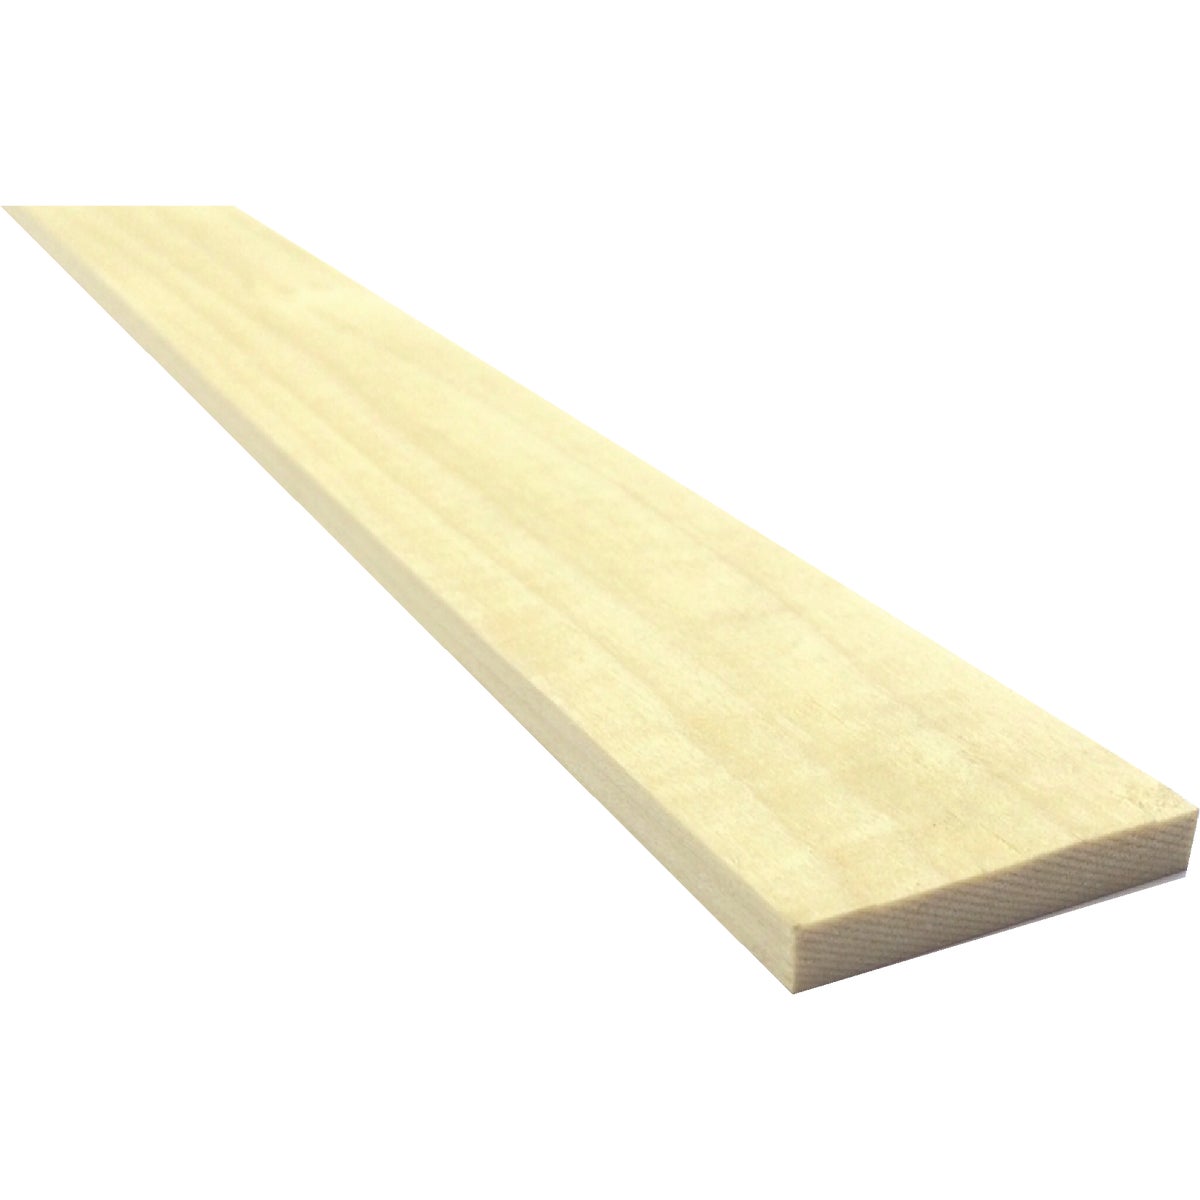 Waddell 1/4 In. x 2 In. x 3 Ft. Poplar Wood Board